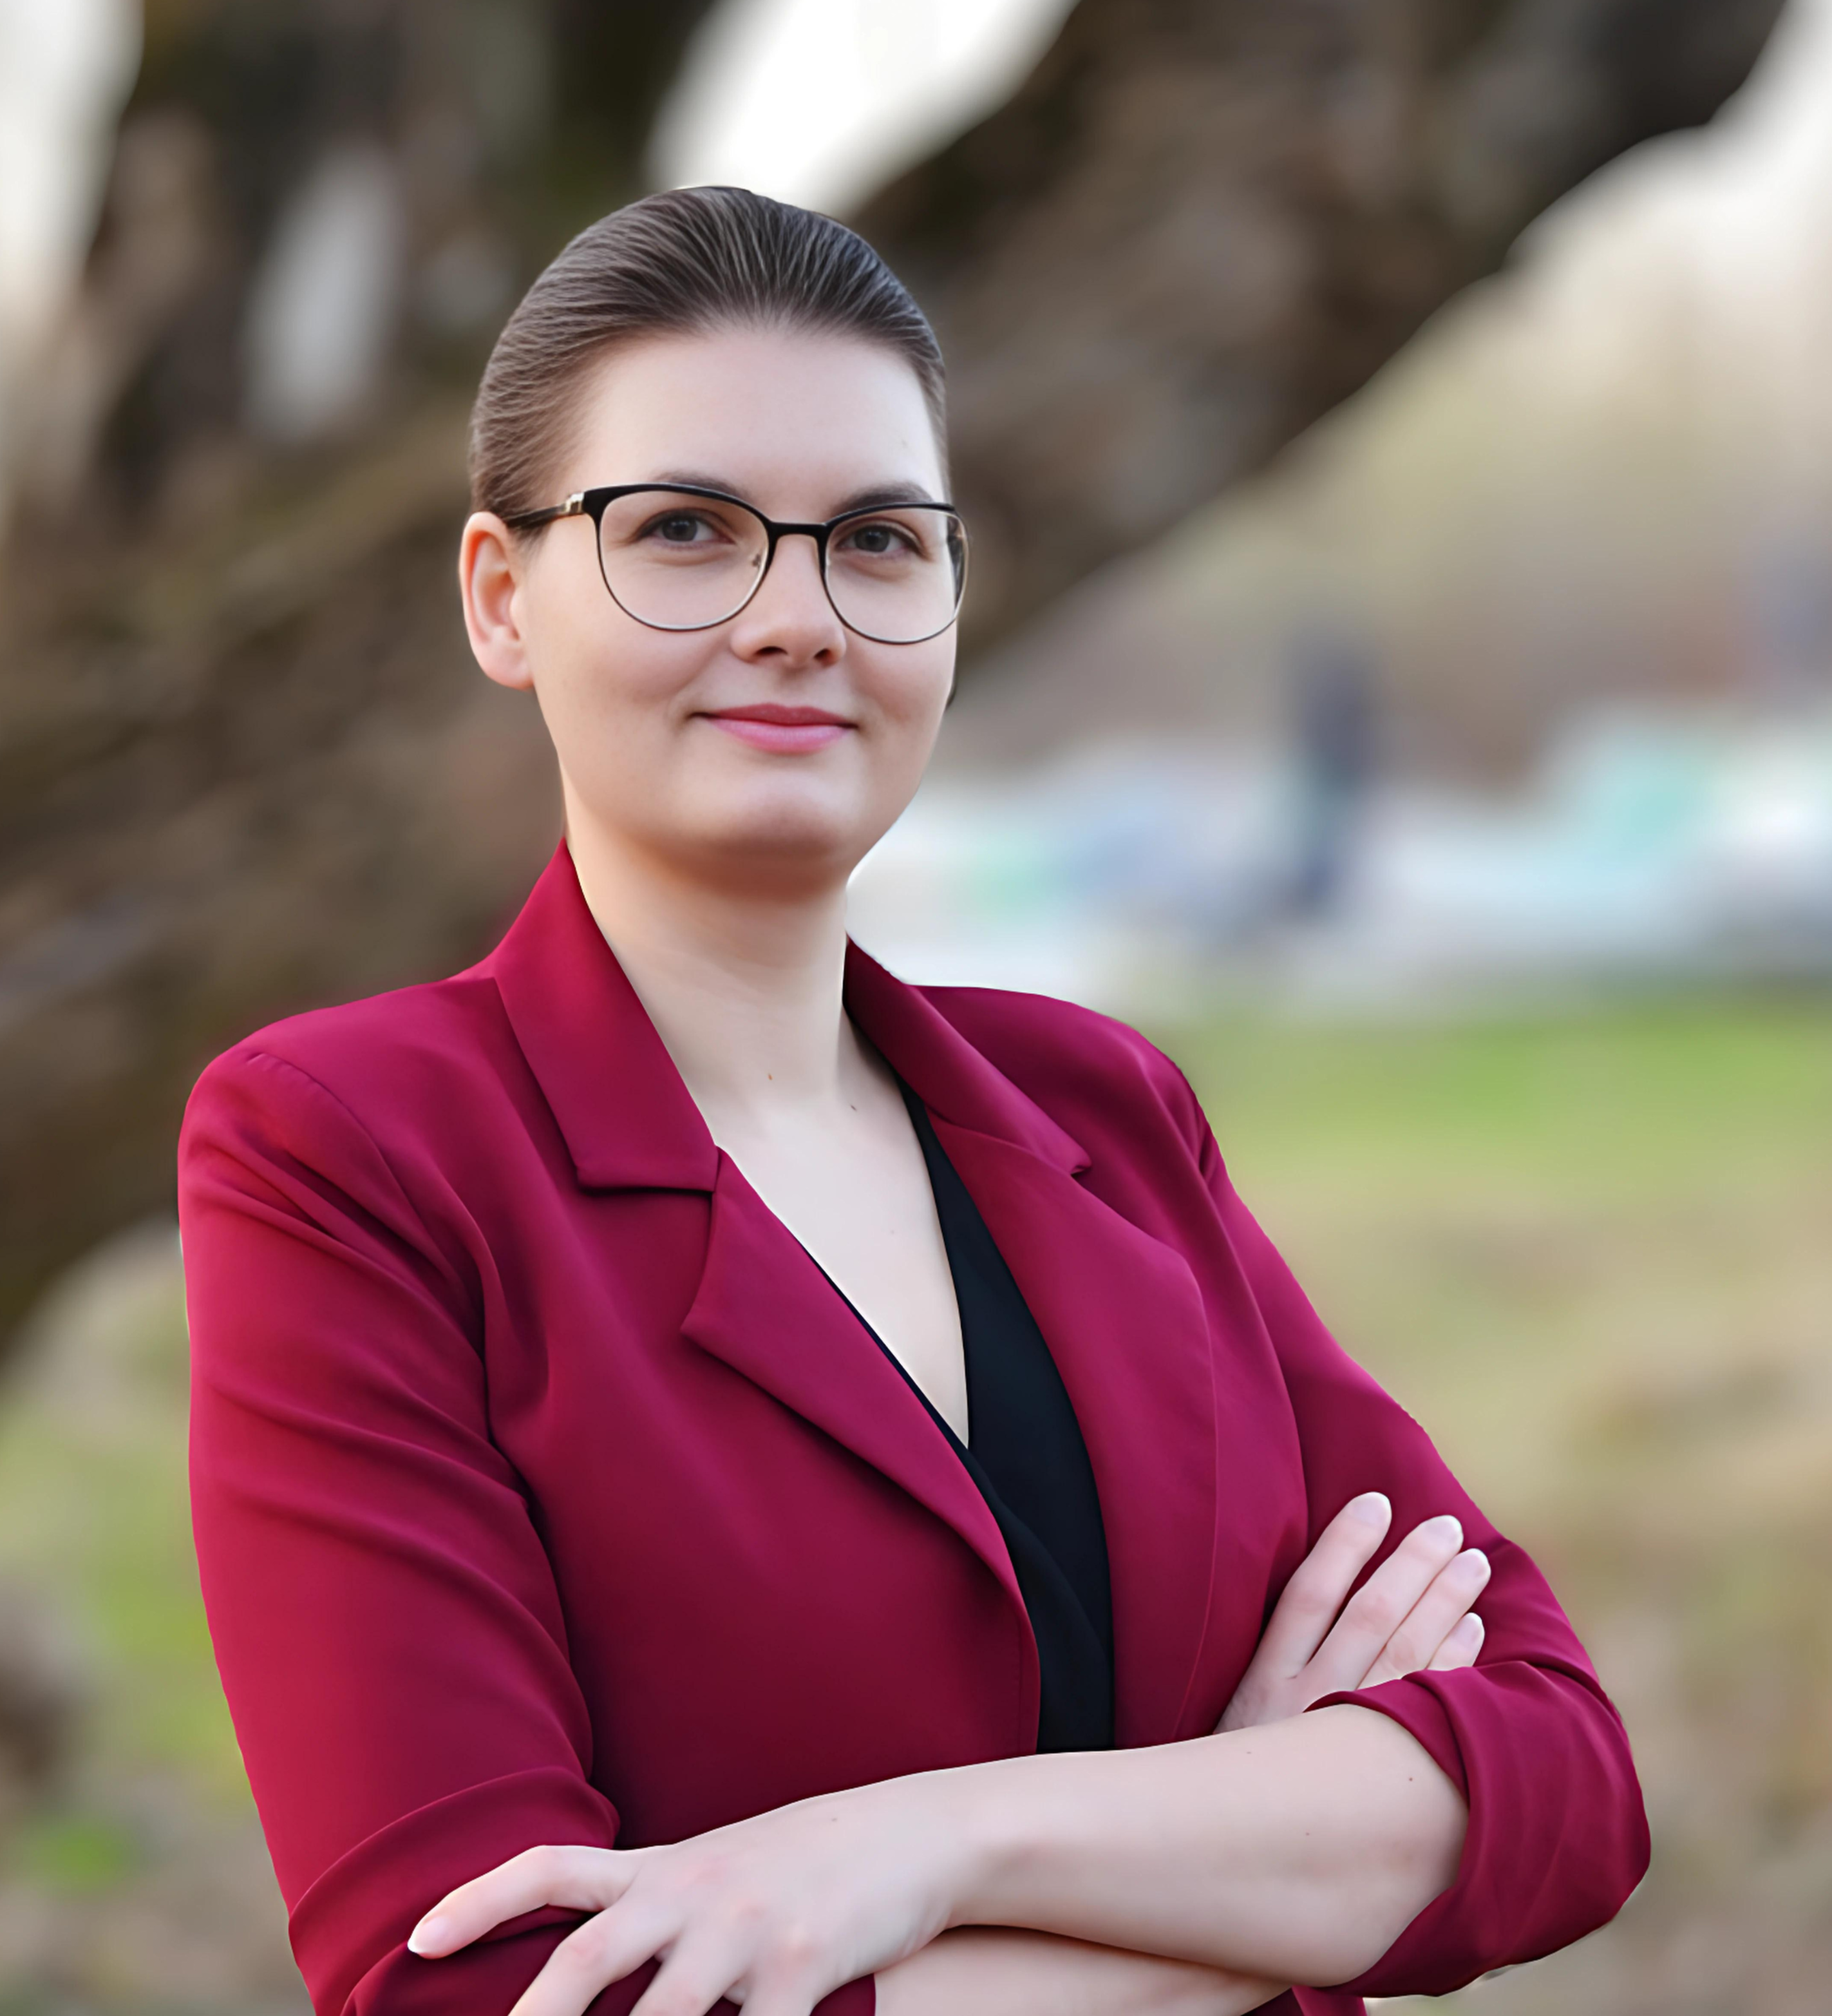 Kandydatka na radną Magdalena Tomczak na tle zieleni. Jest ubrana w czerwoną marynarkę i czarną koszulę.